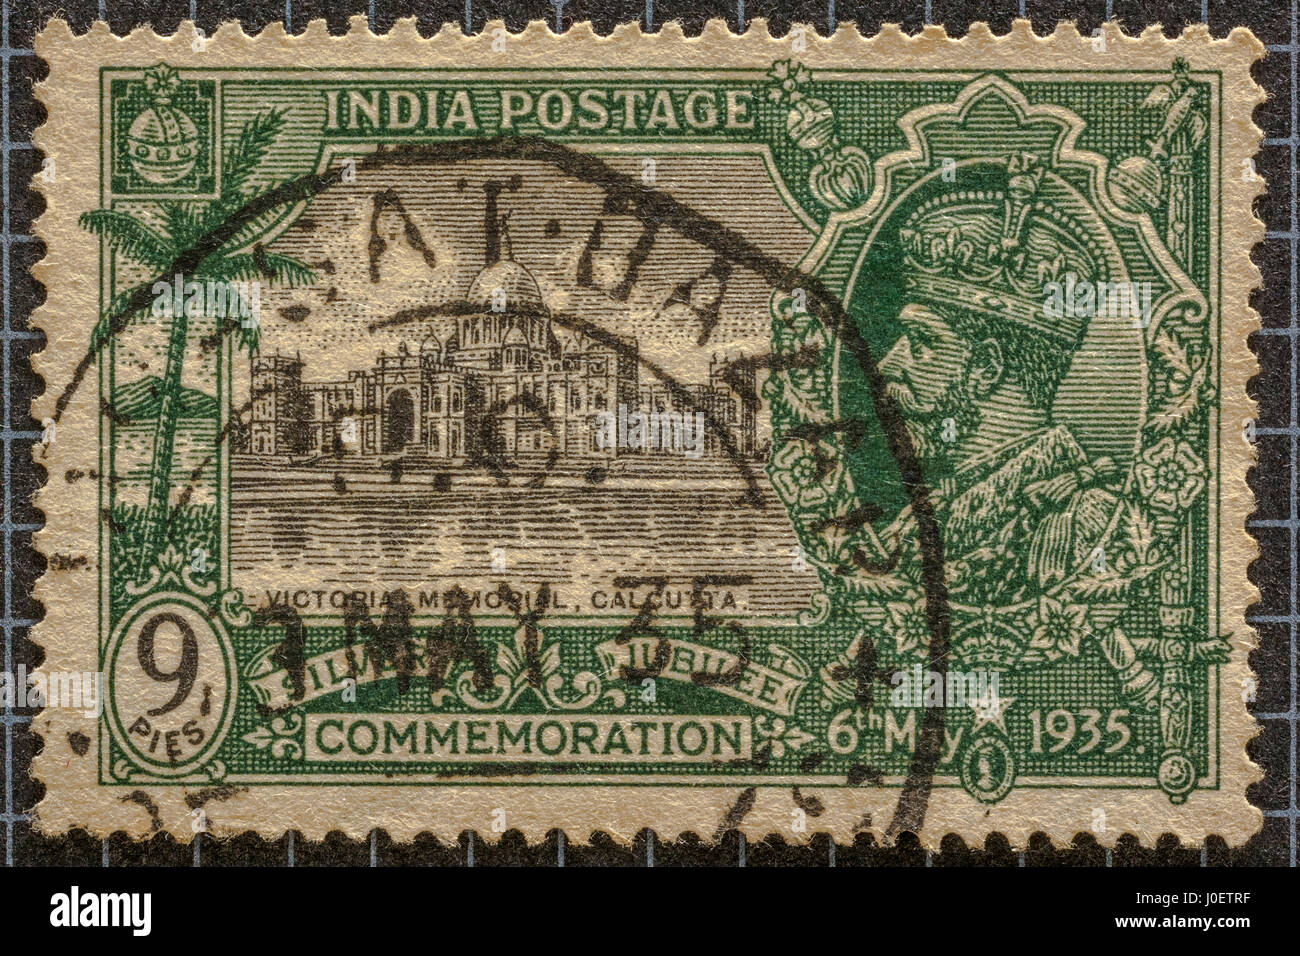 La commémoration du jubilé de 1935 timbres-poste 9 pièces, Victoria Memorial, Calcutta, des timbres, de l'Inde, l'Asie Banque D'Images